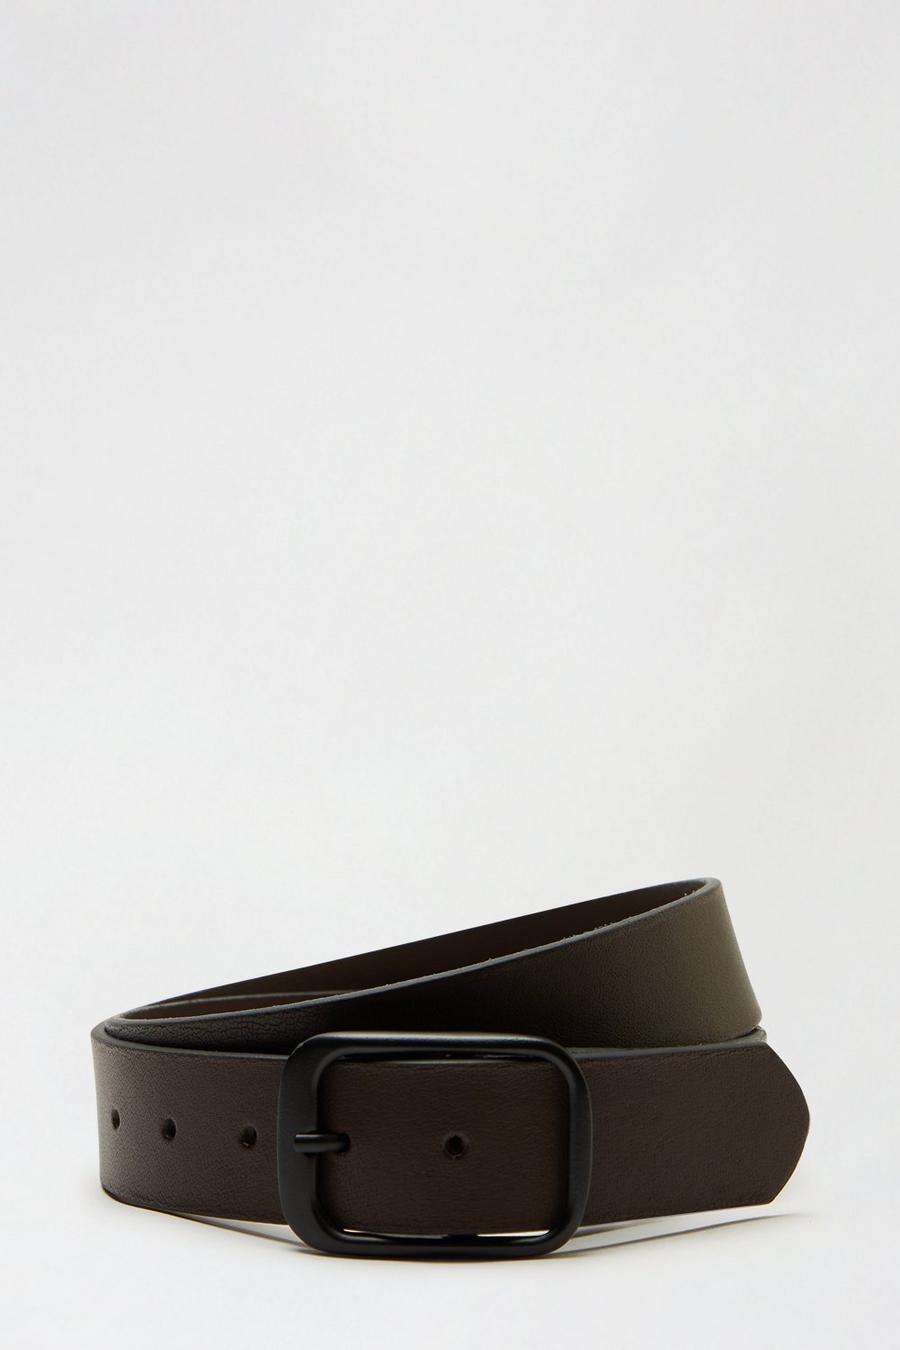 Leather Brown Loop Buckle Belt